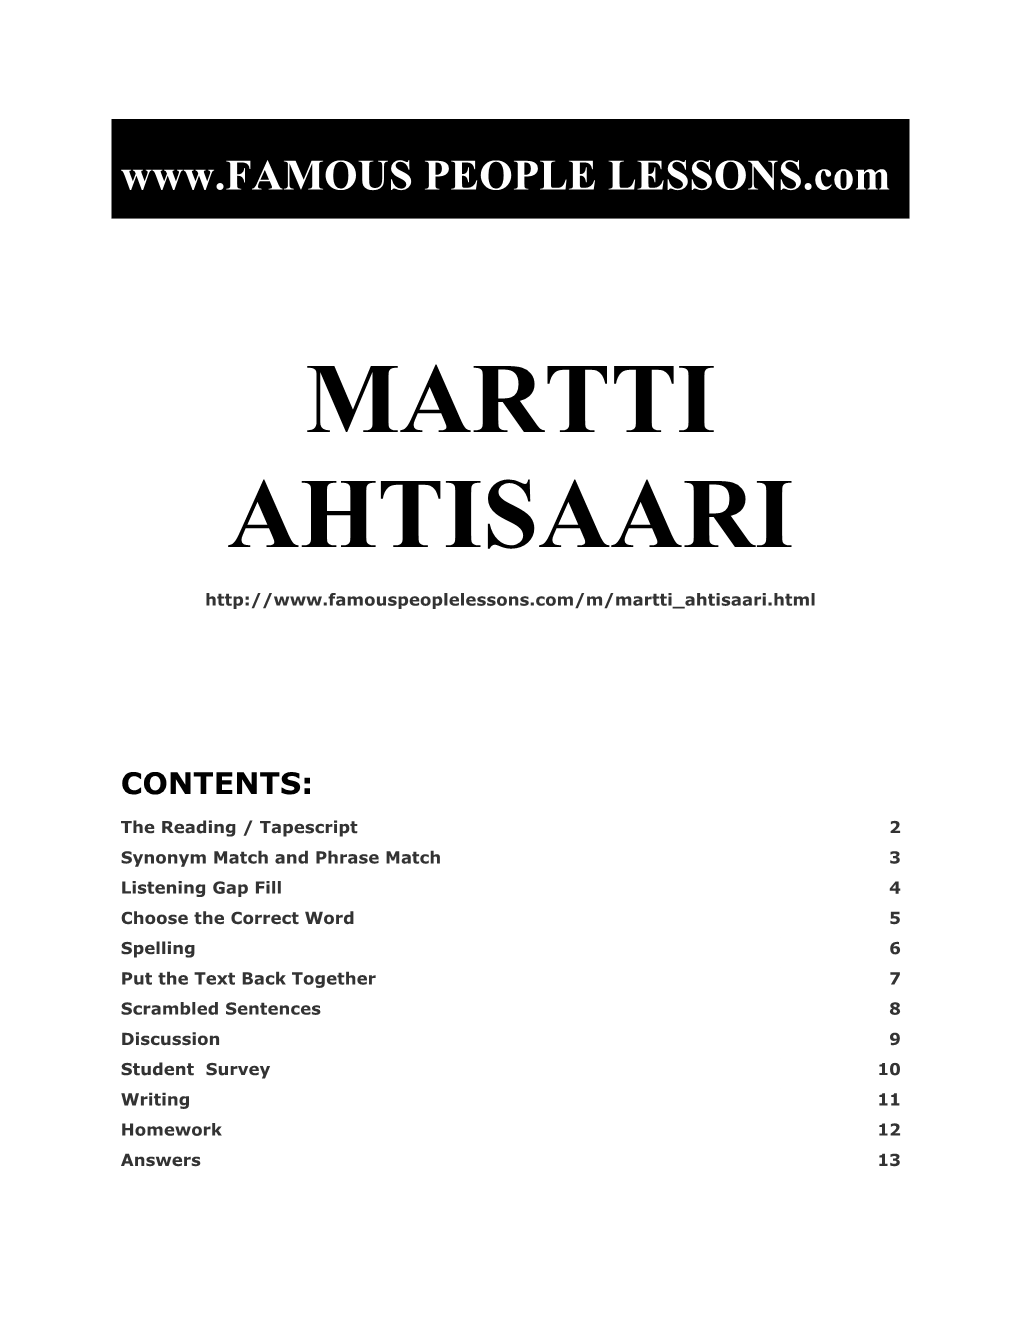 Famous People Lessons - Martti Ahtisaari